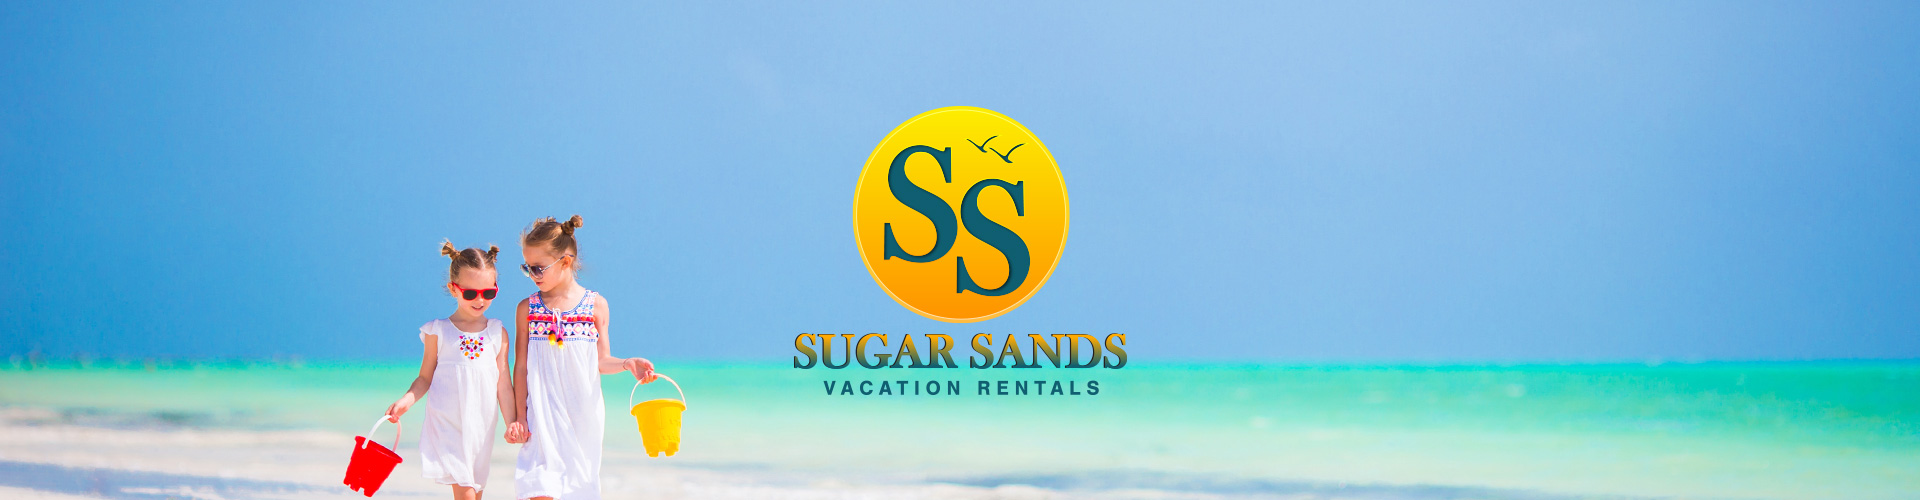 Sugar Sands Vacation Rentals Banner